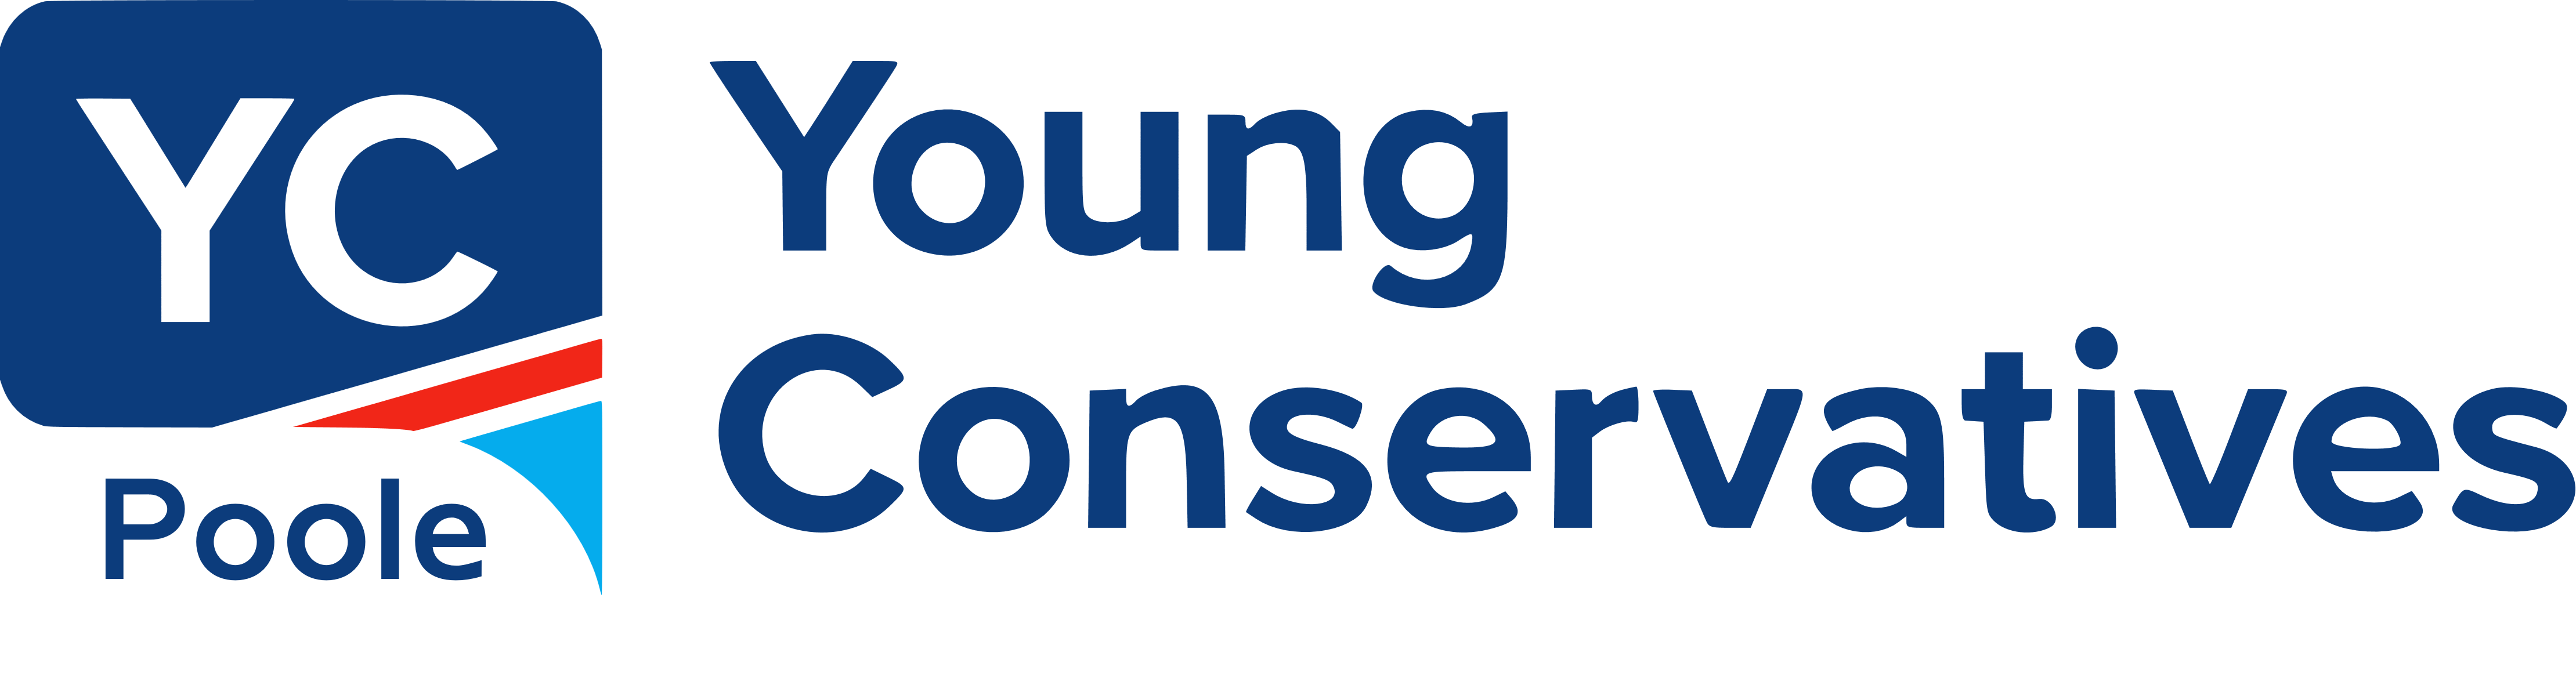 Poole YC Logo